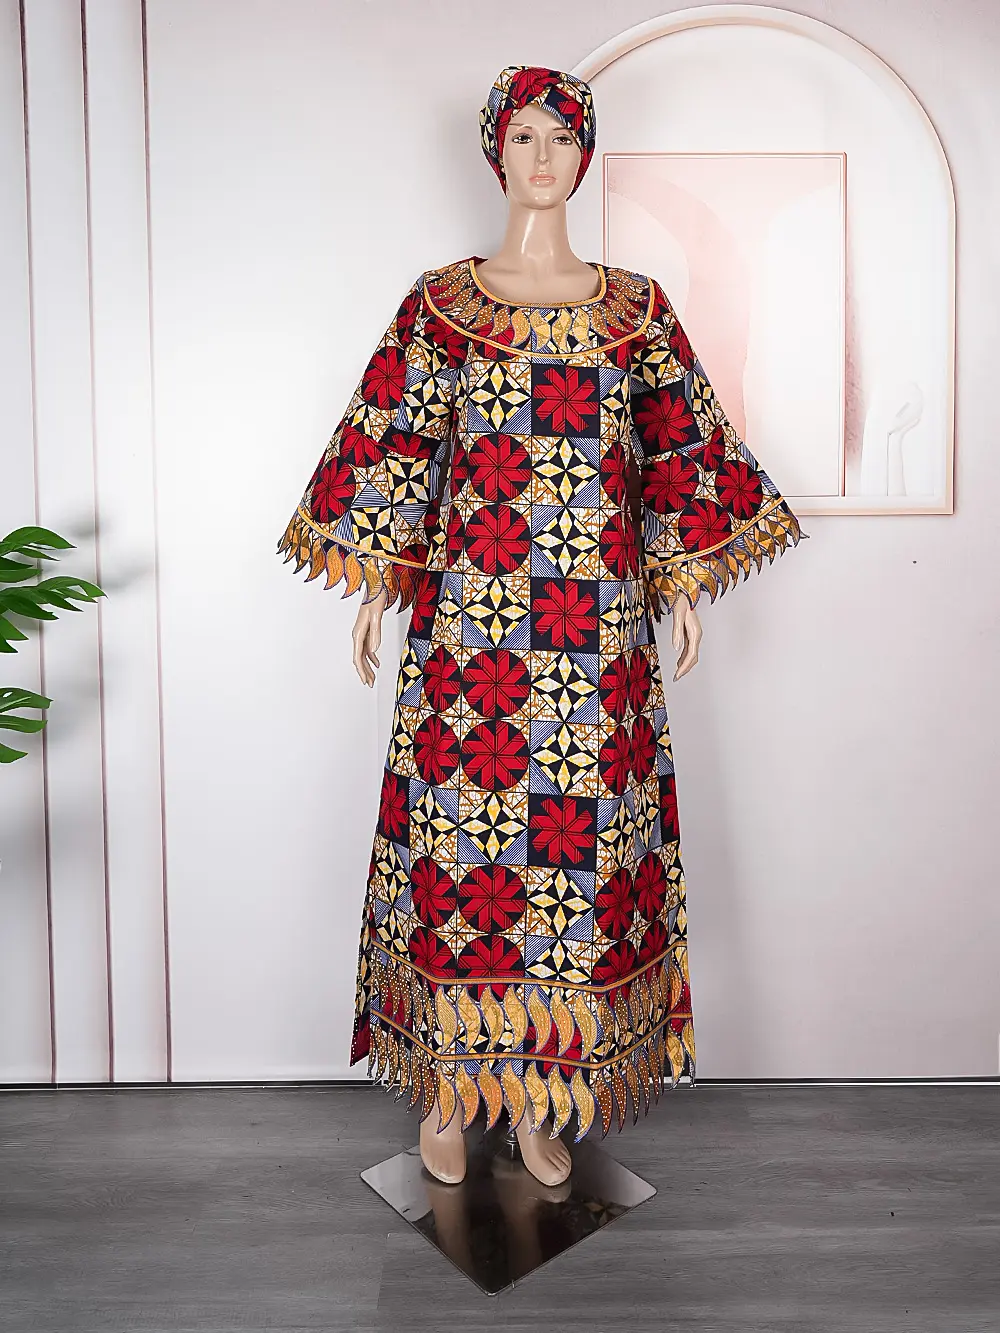 H & D özel afrika elbise waxcloth geleneksel elbise gevşek yaz kısa kollu